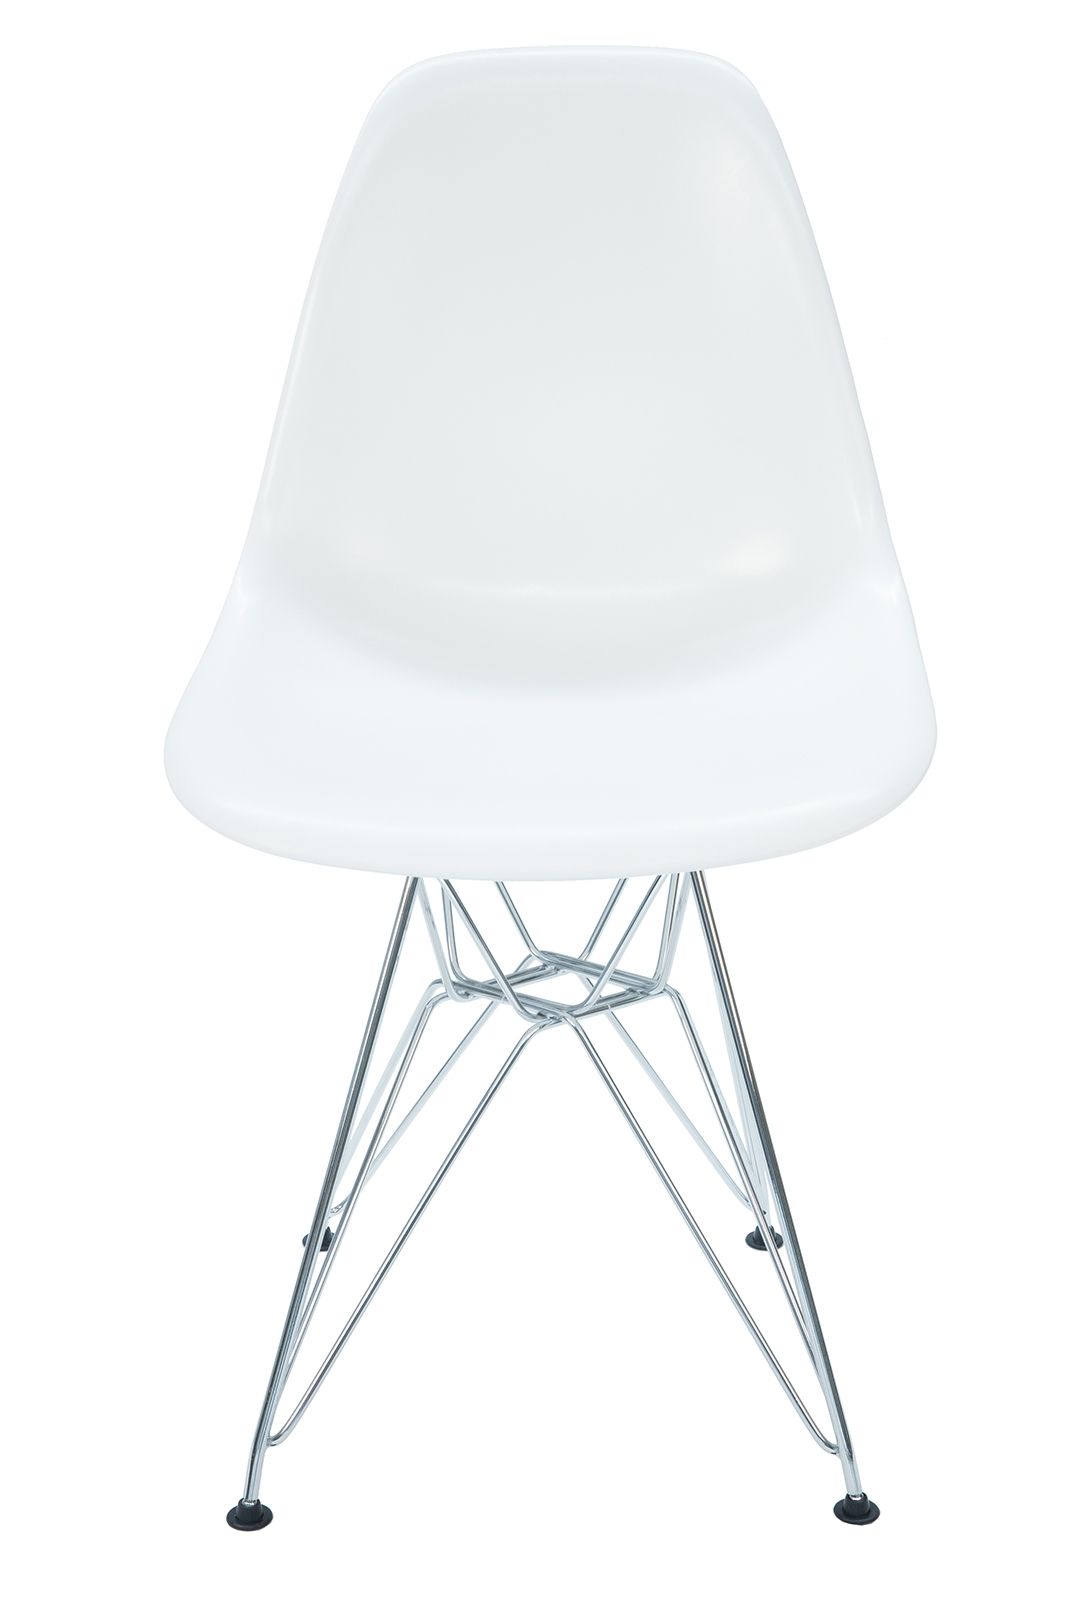 Replica Eames DSR Eiffel Chair White & Chrome